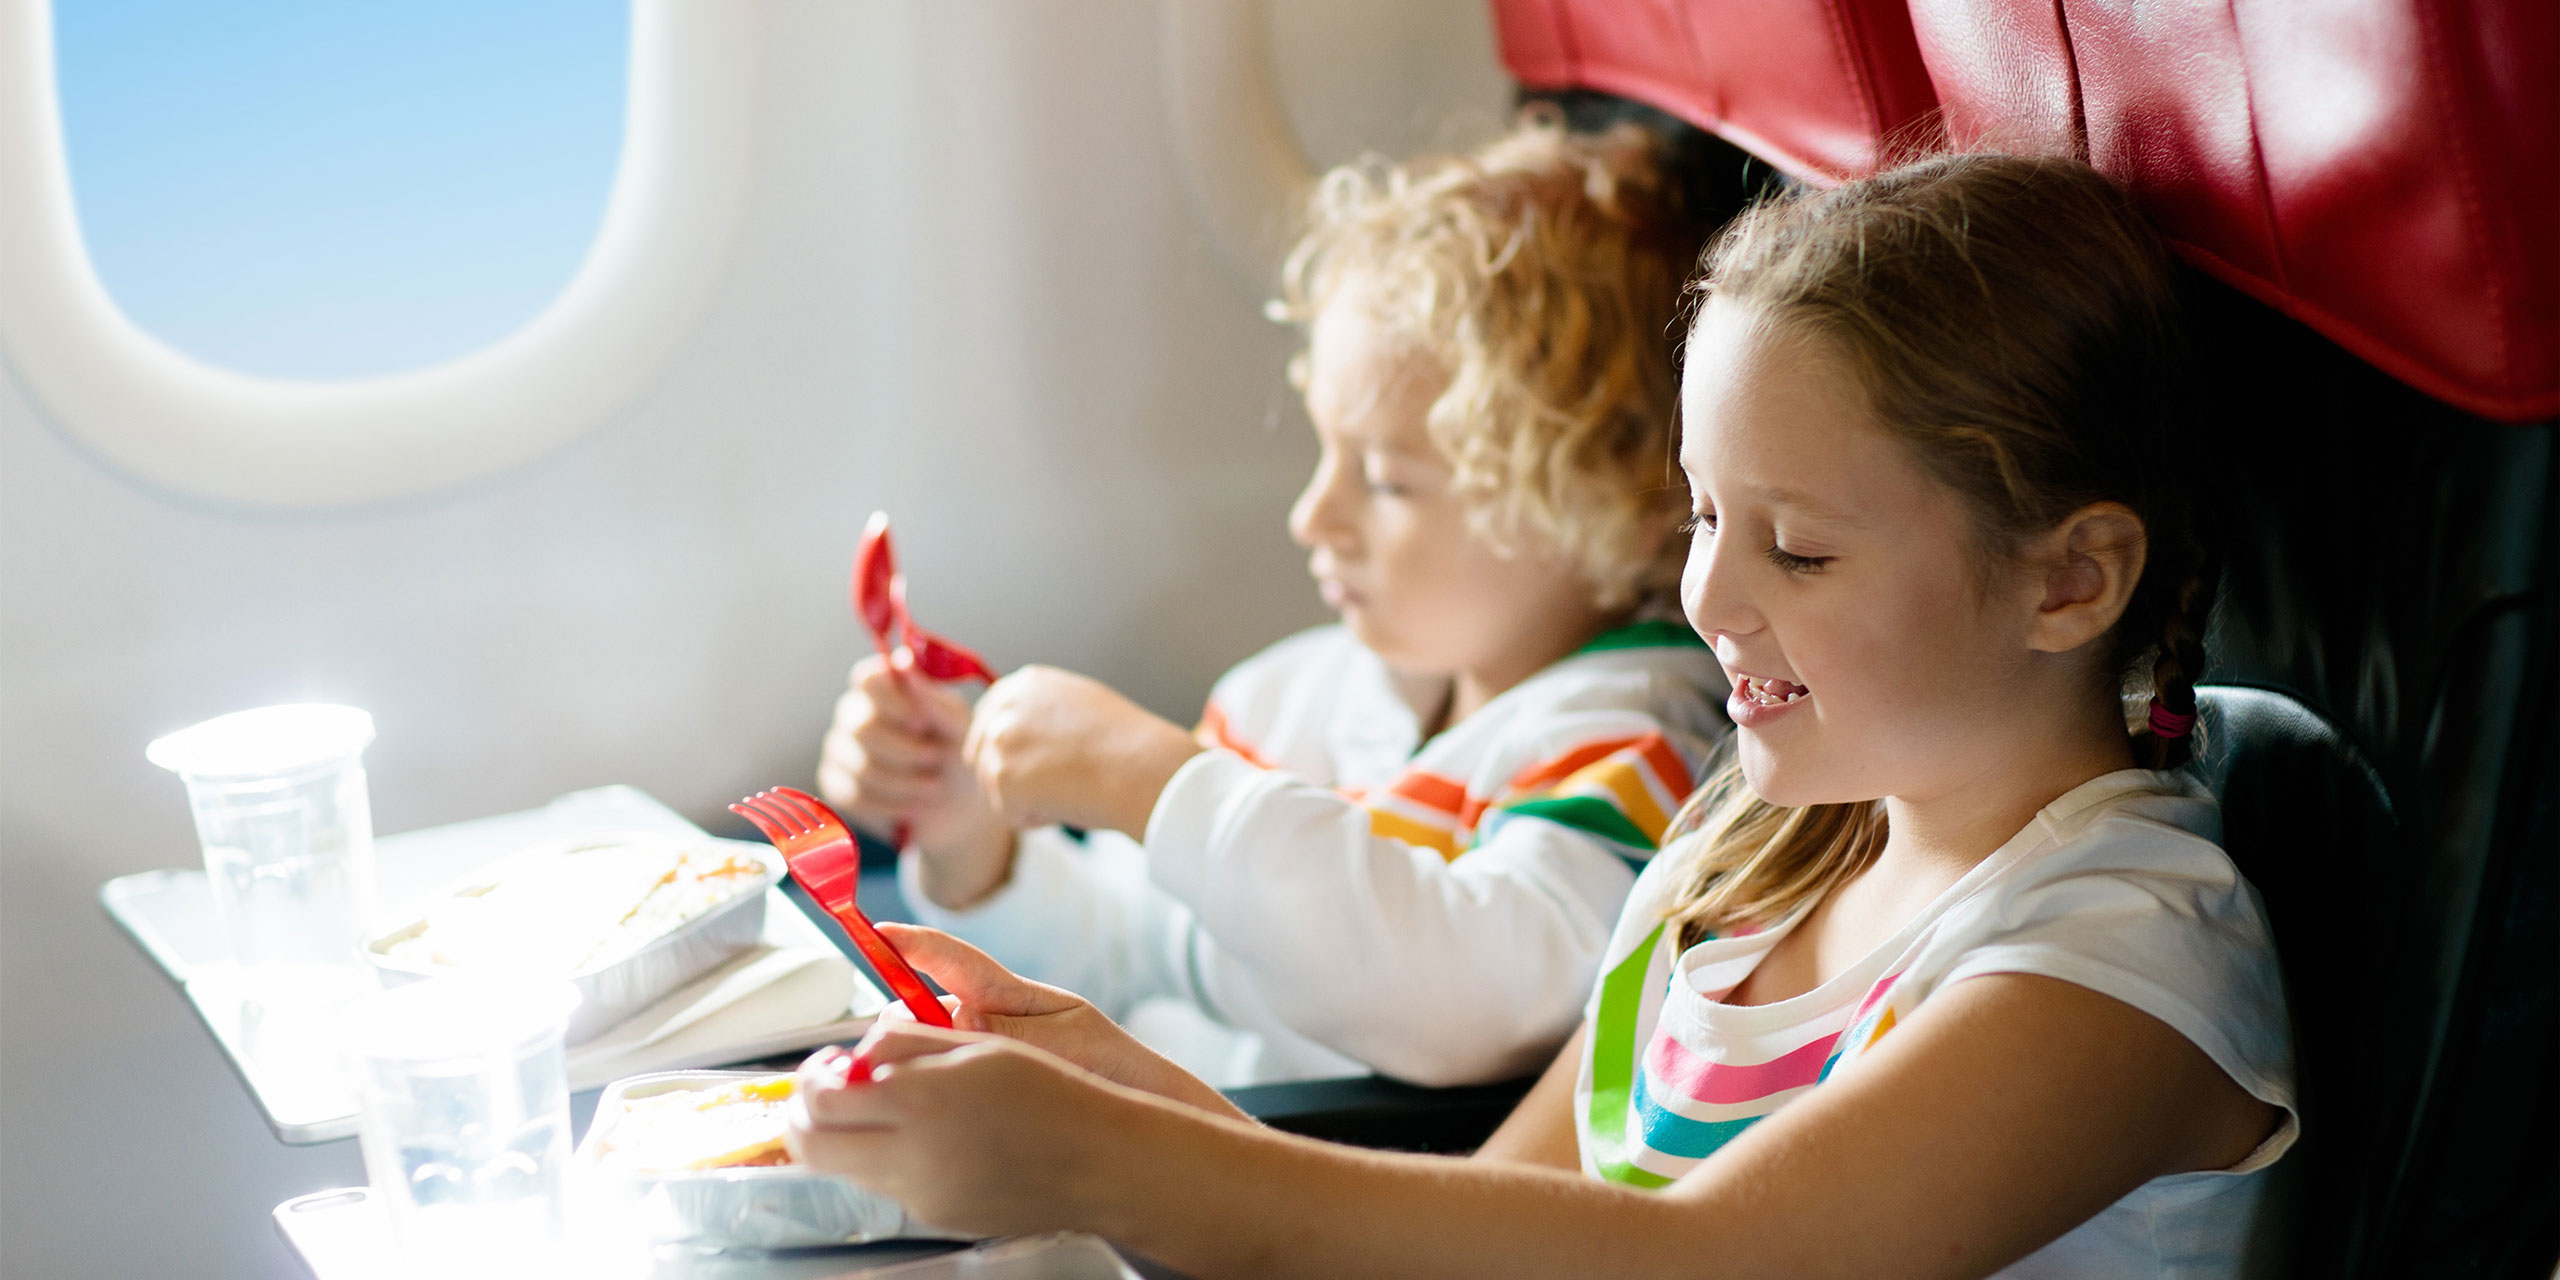 Kids Eating Snacks On A Plane; Courtesy of FamVeld/Shutterstock.com